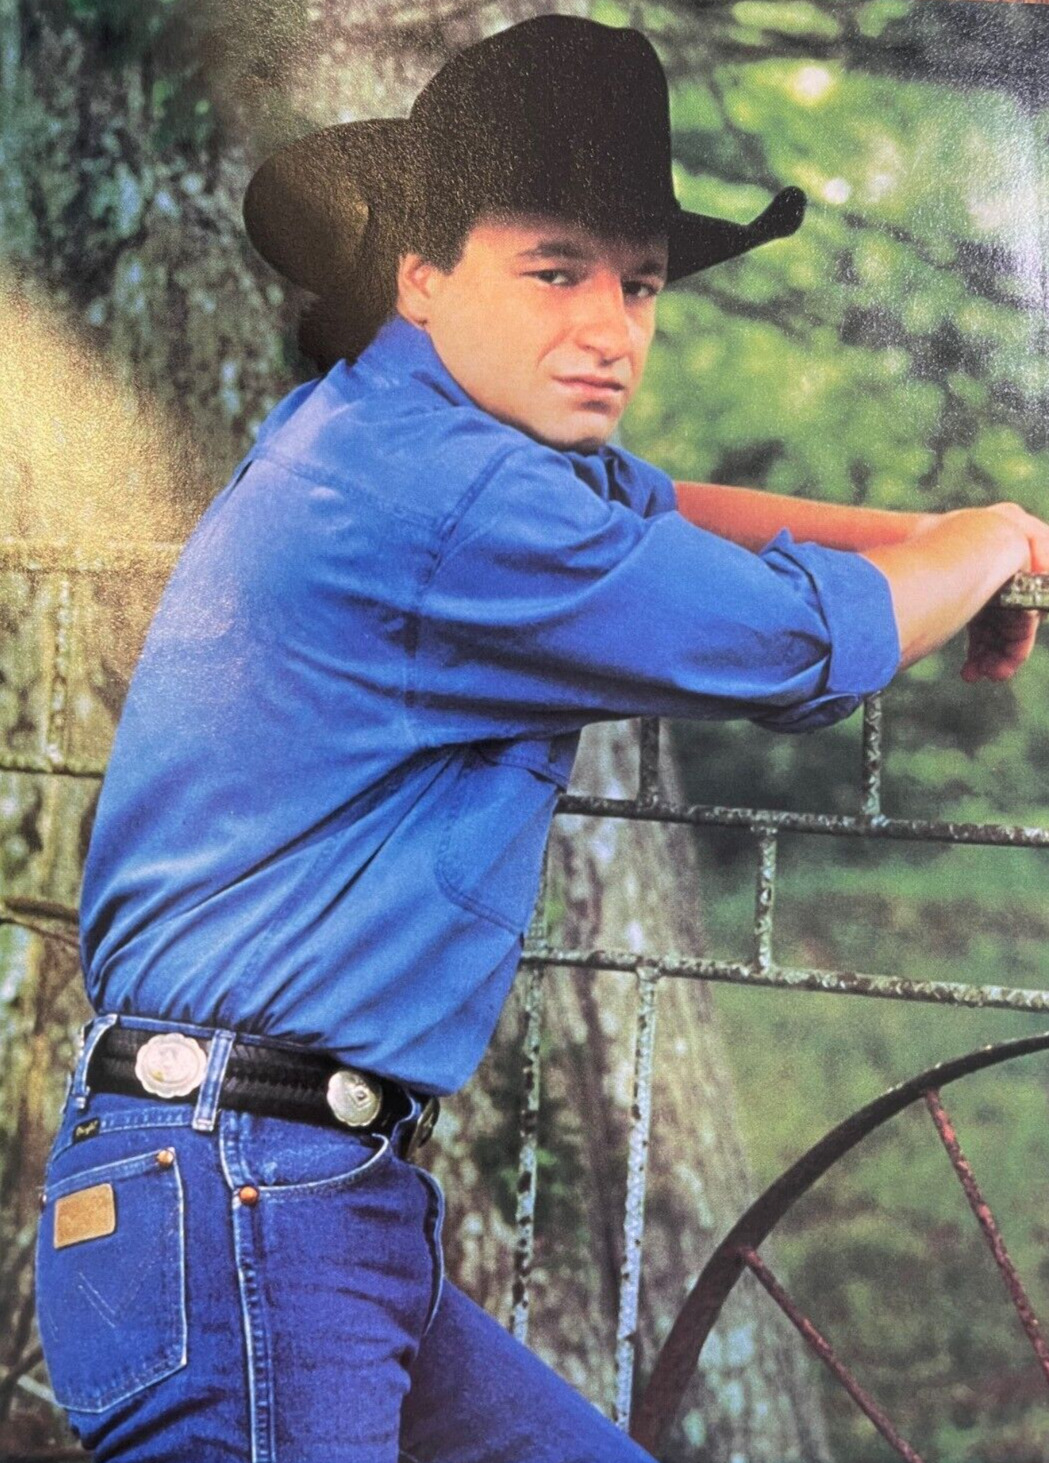 1995 Country Singer Mark Chestnut